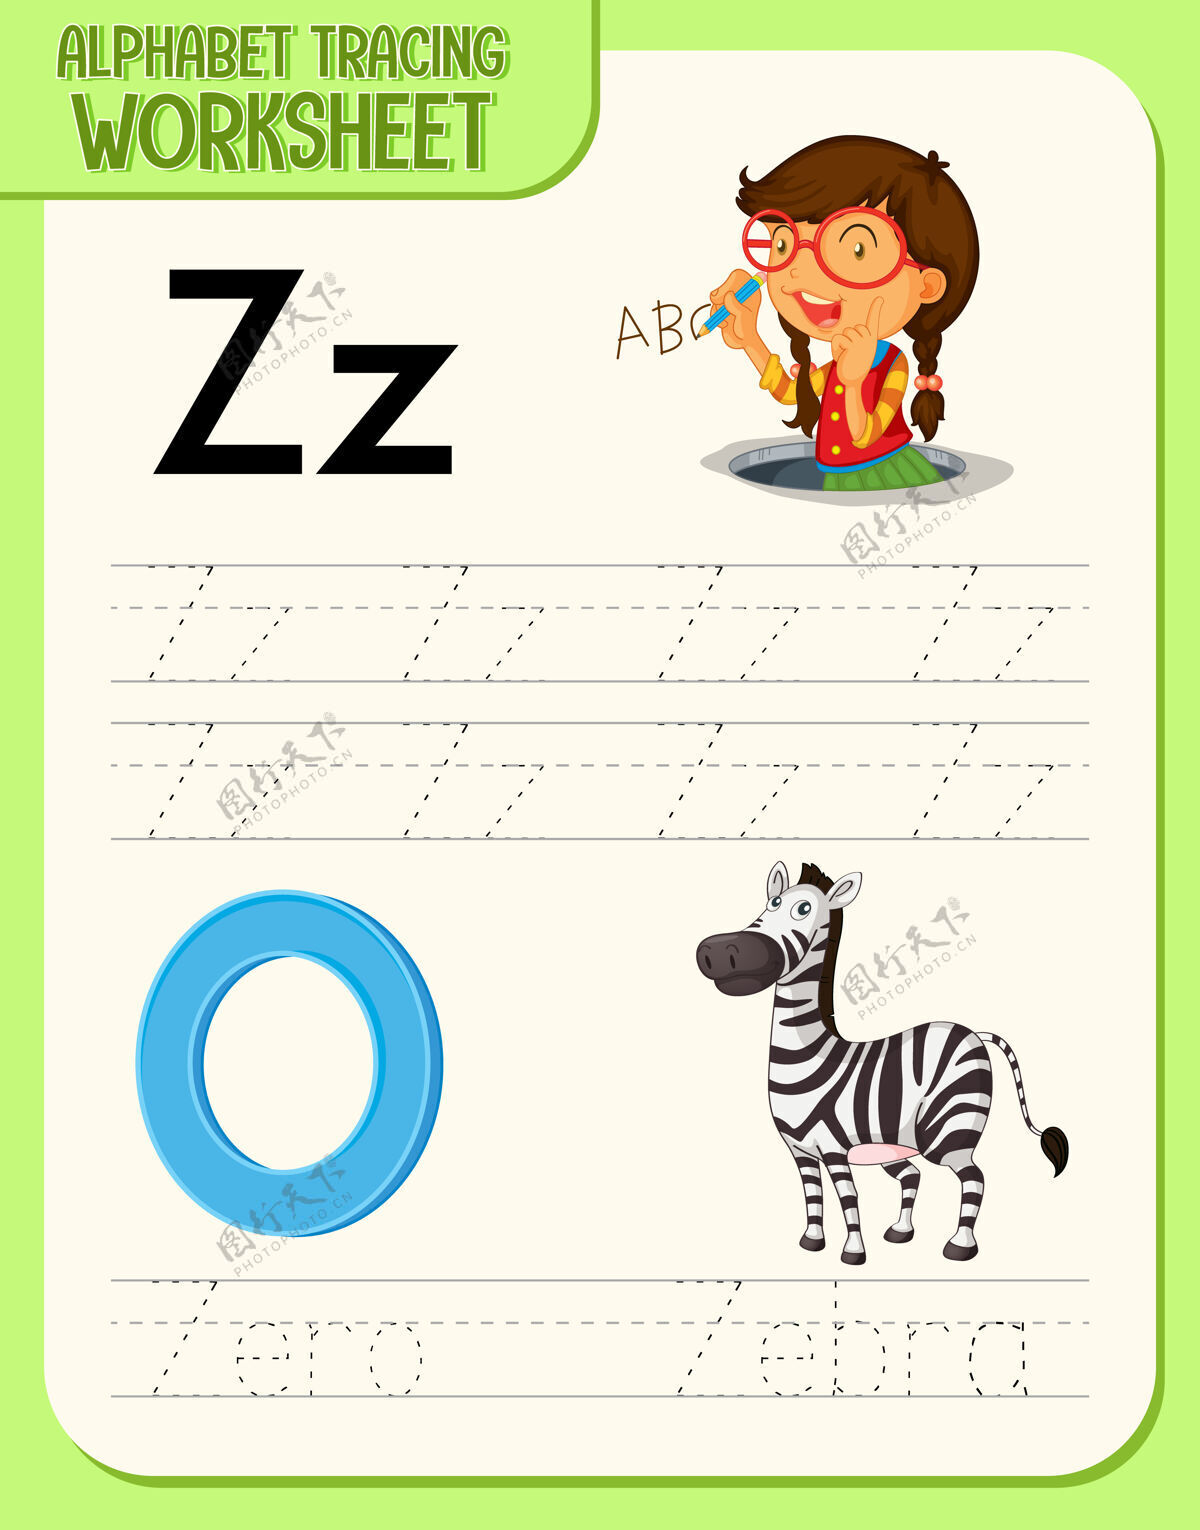 练习字母跟踪工作表与字母z和z幼儿园幼儿园语言